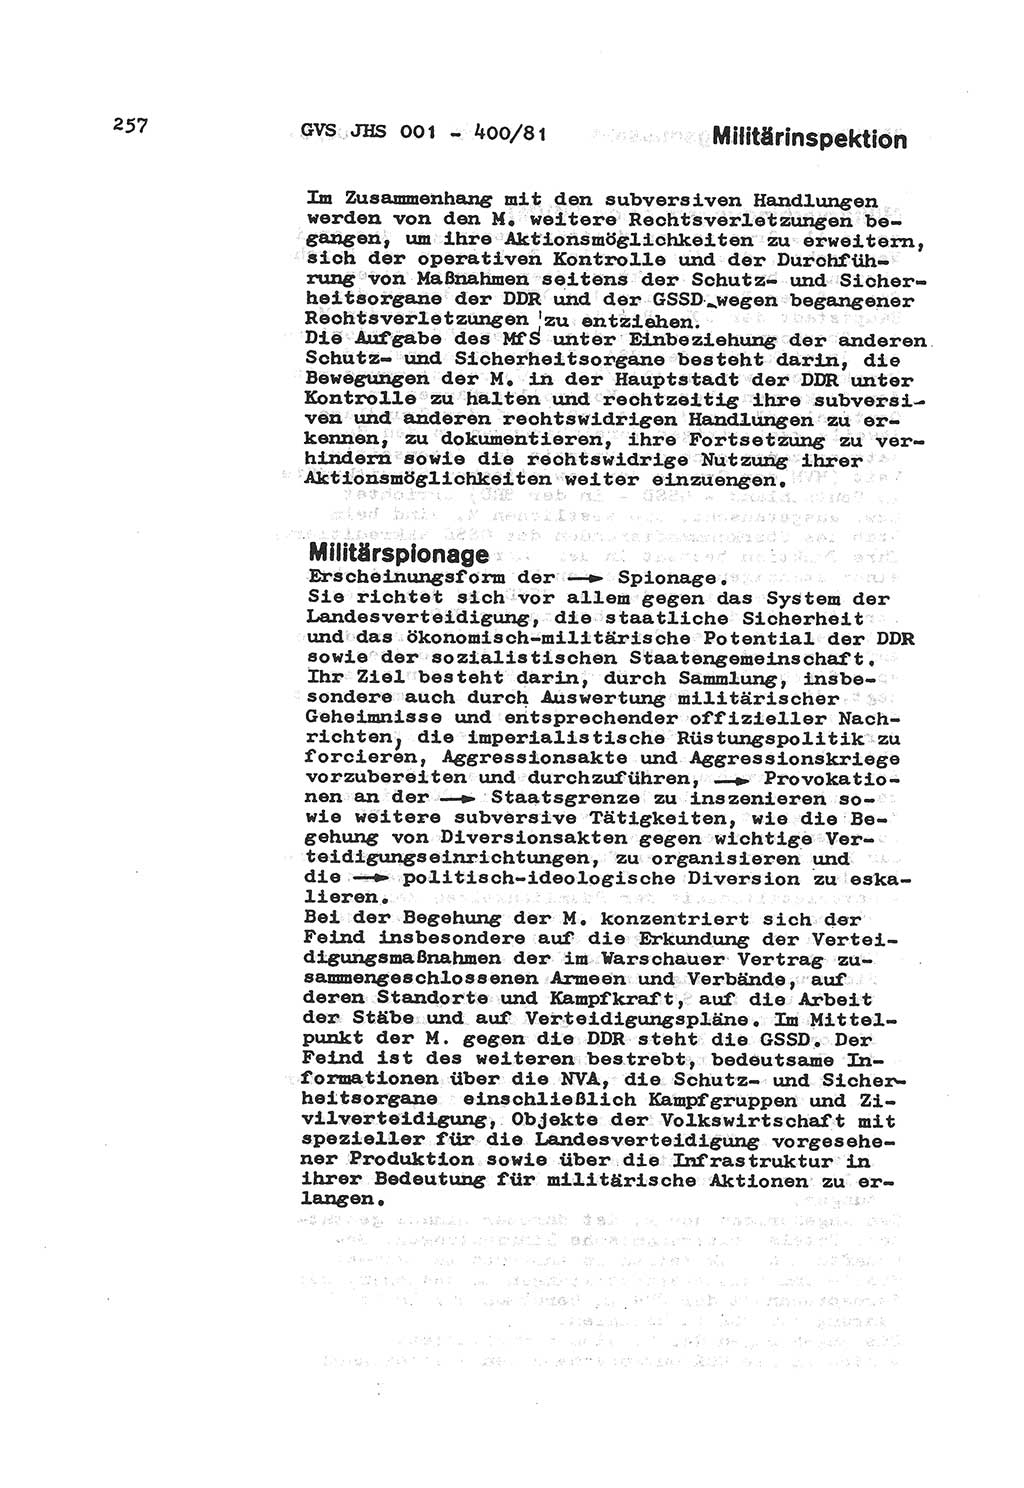 Wörterbuch der politisch-operativen Arbeit, Ministerium für Staatssicherheit (MfS) [Deutsche Demokratische Republik (DDR)], Juristische Hochschule (JHS), Geheime Verschlußsache (GVS) o001-400/81, Potsdam 1985, Blatt 257 (Wb. pol.-op. Arb. MfS DDR JHS GVS o001-400/81 1985, Bl. 257)